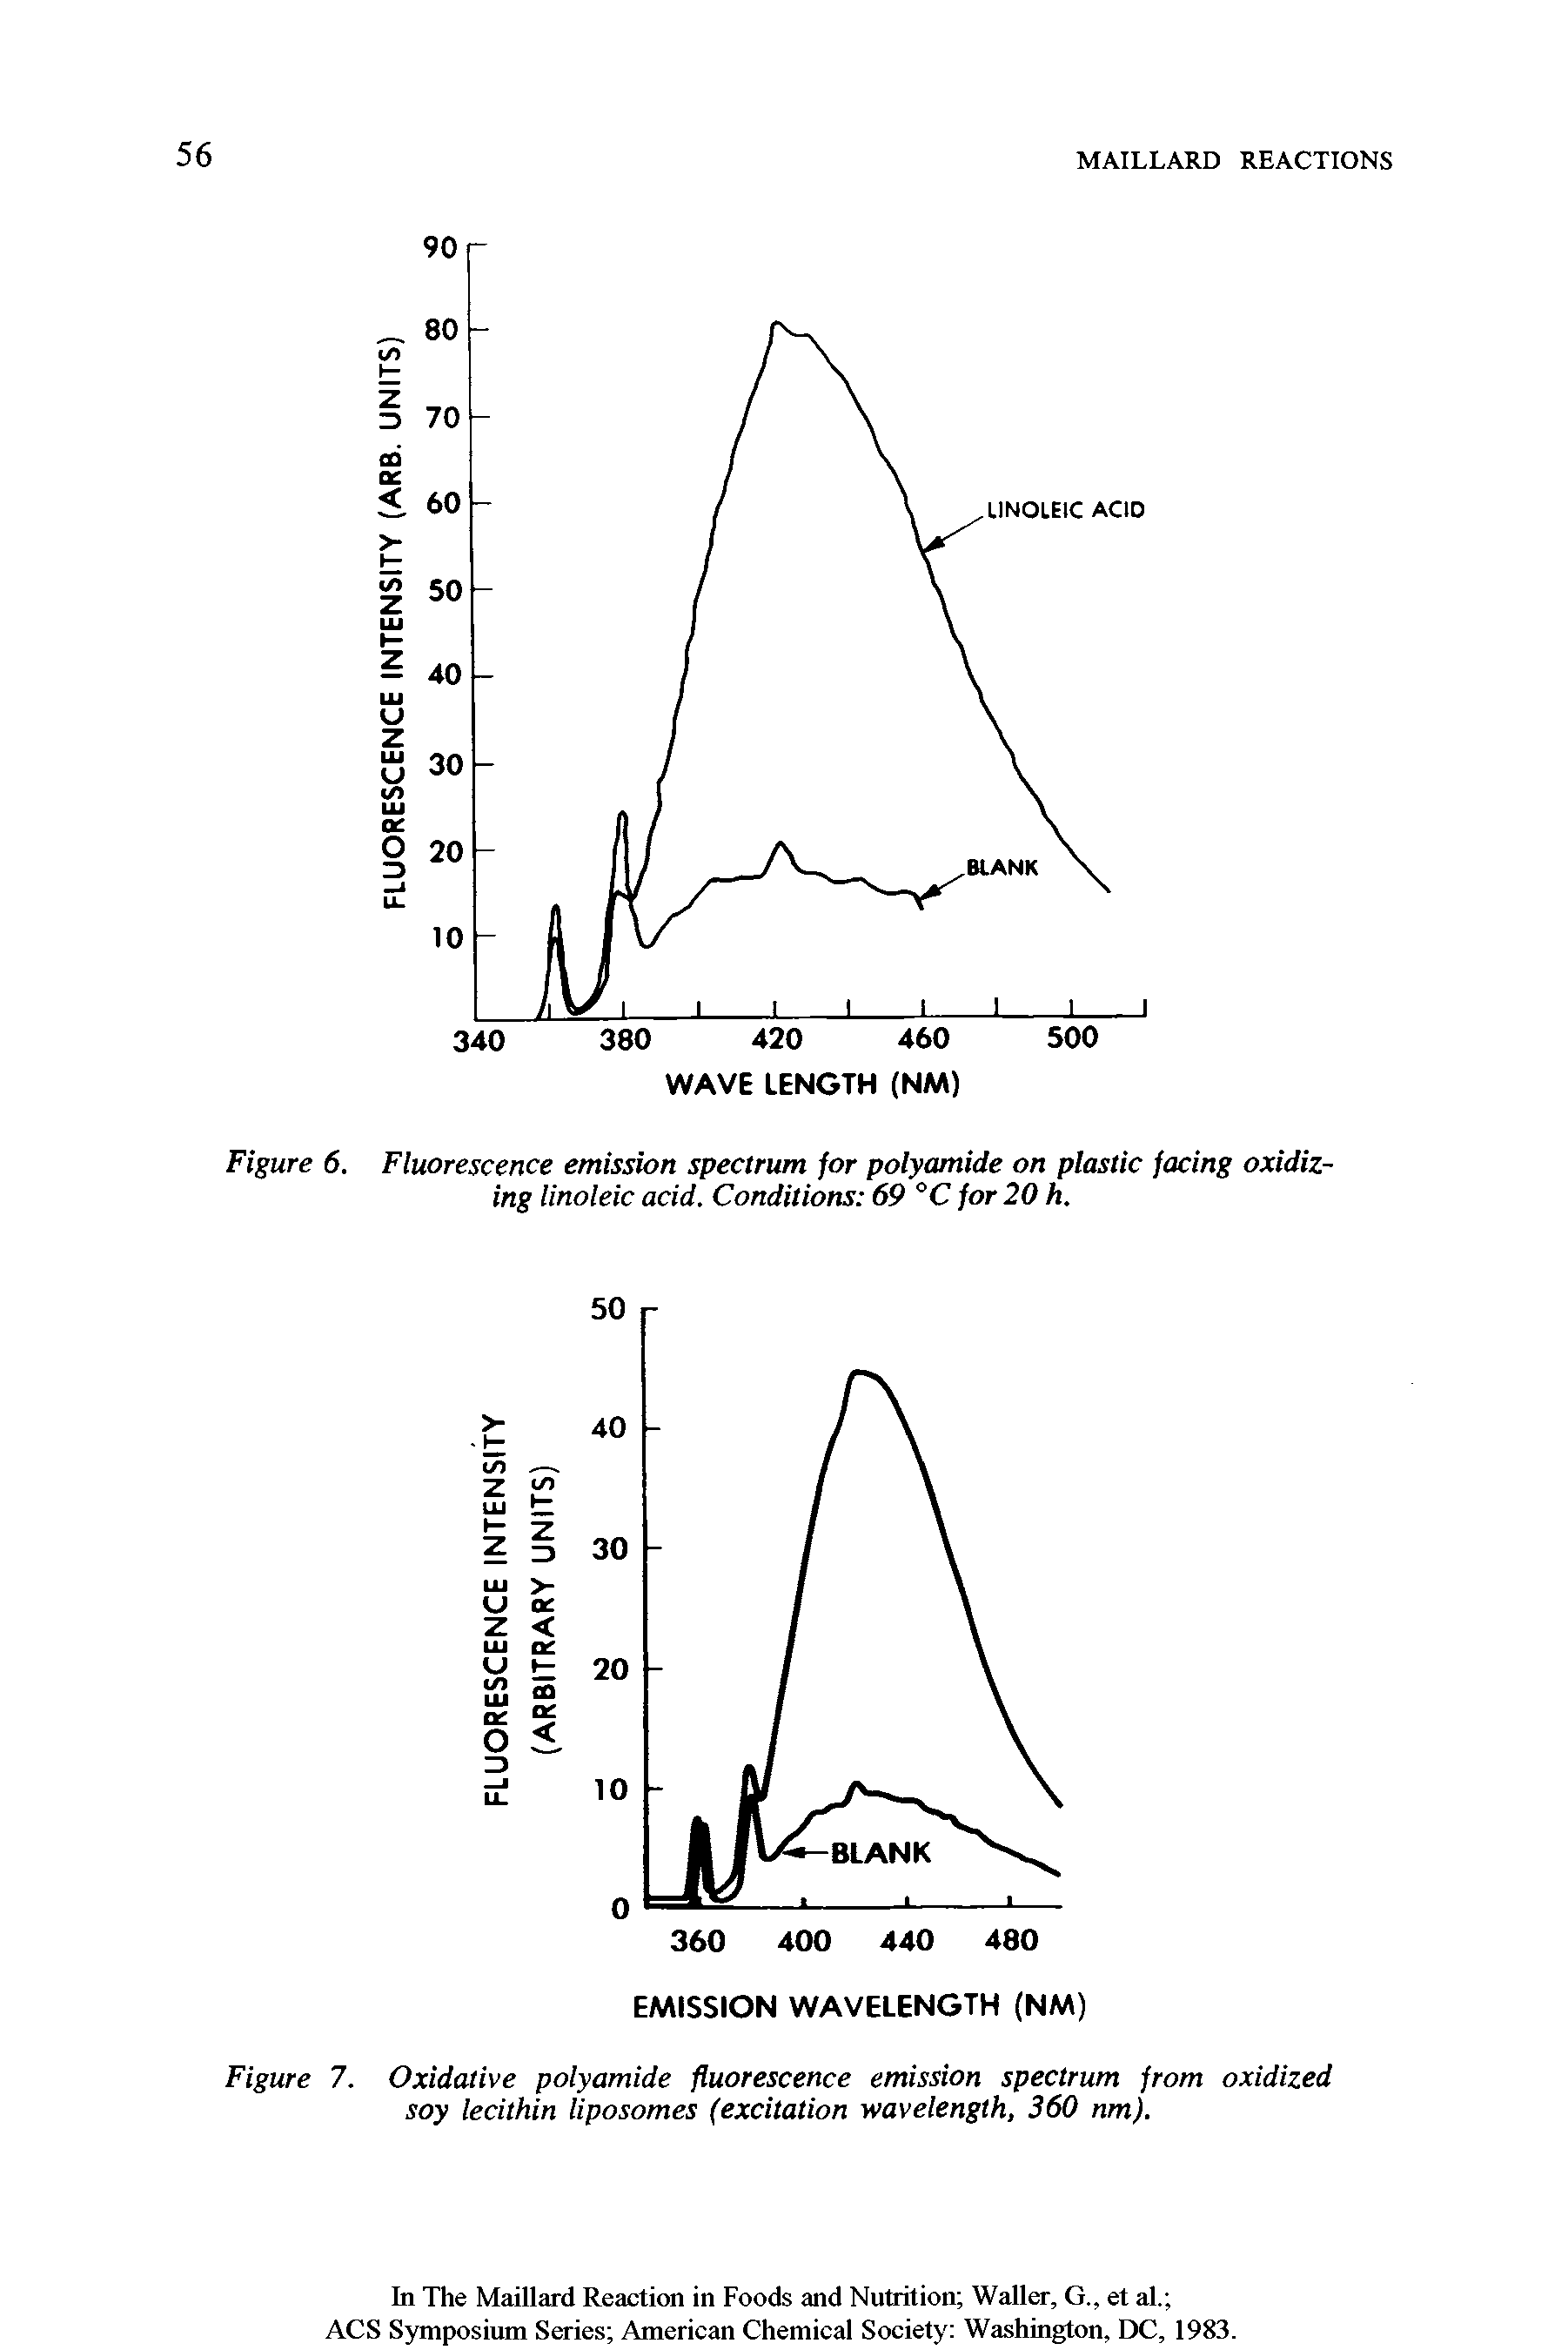 Figure 7. Oxidative polyamide fluorescence emission spectrum from oxidized soy lecithin liposomes (excitation wavelength, 360 nm).